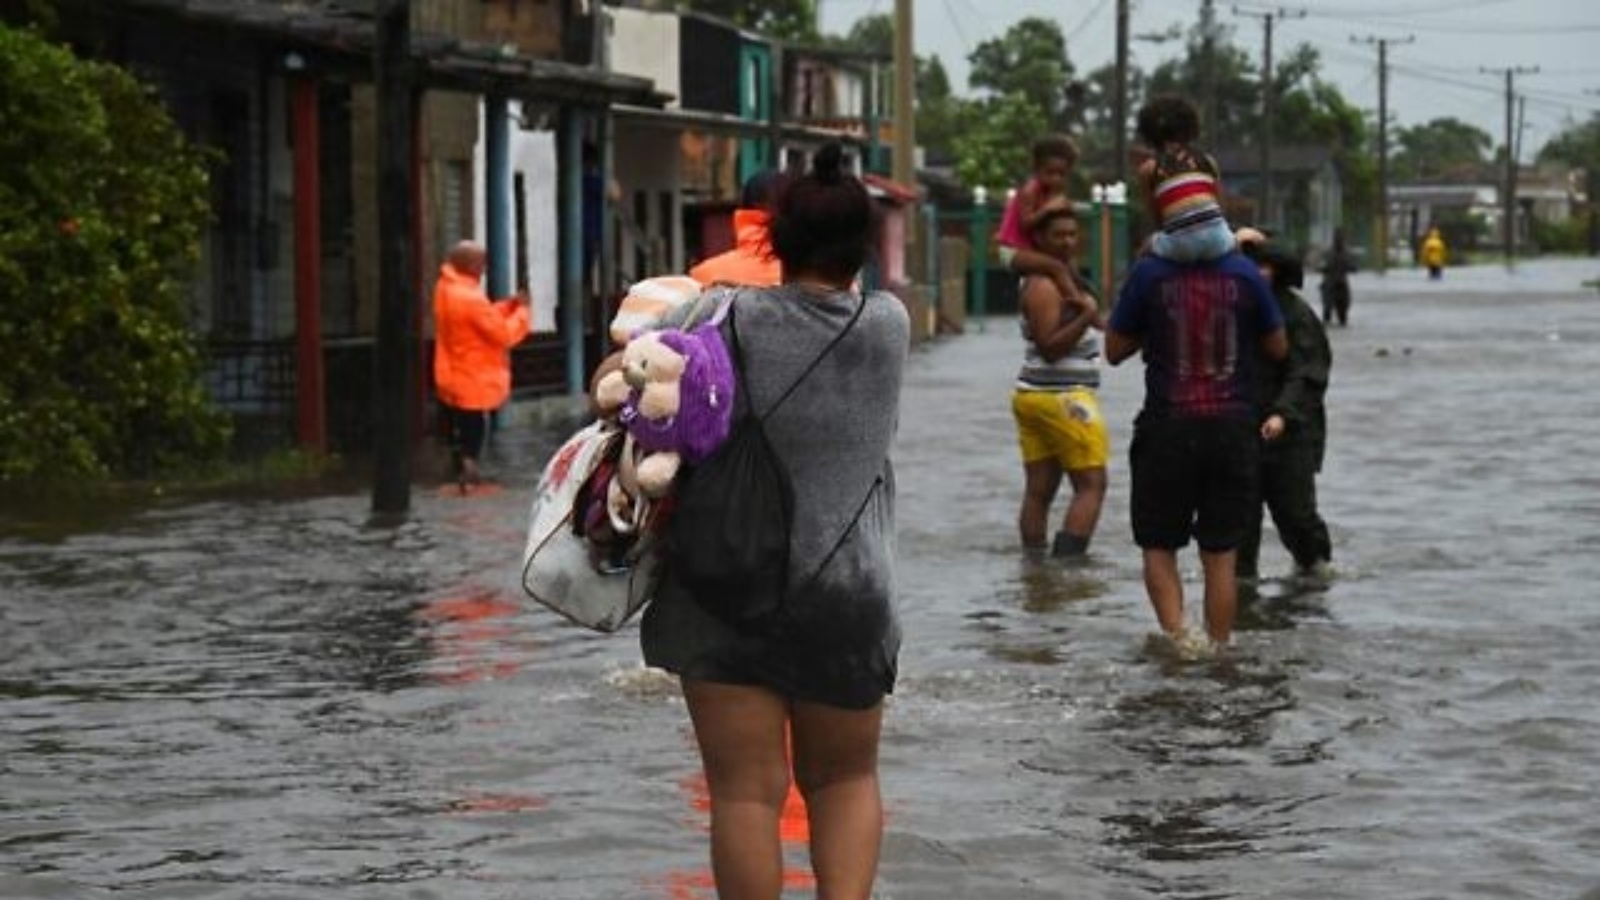 أشخاص يسيرون في شارع غمرته المياه في باتابانو، كوبا، أثناء مرور إعصار إيان، في 27 سبتمبر 2022